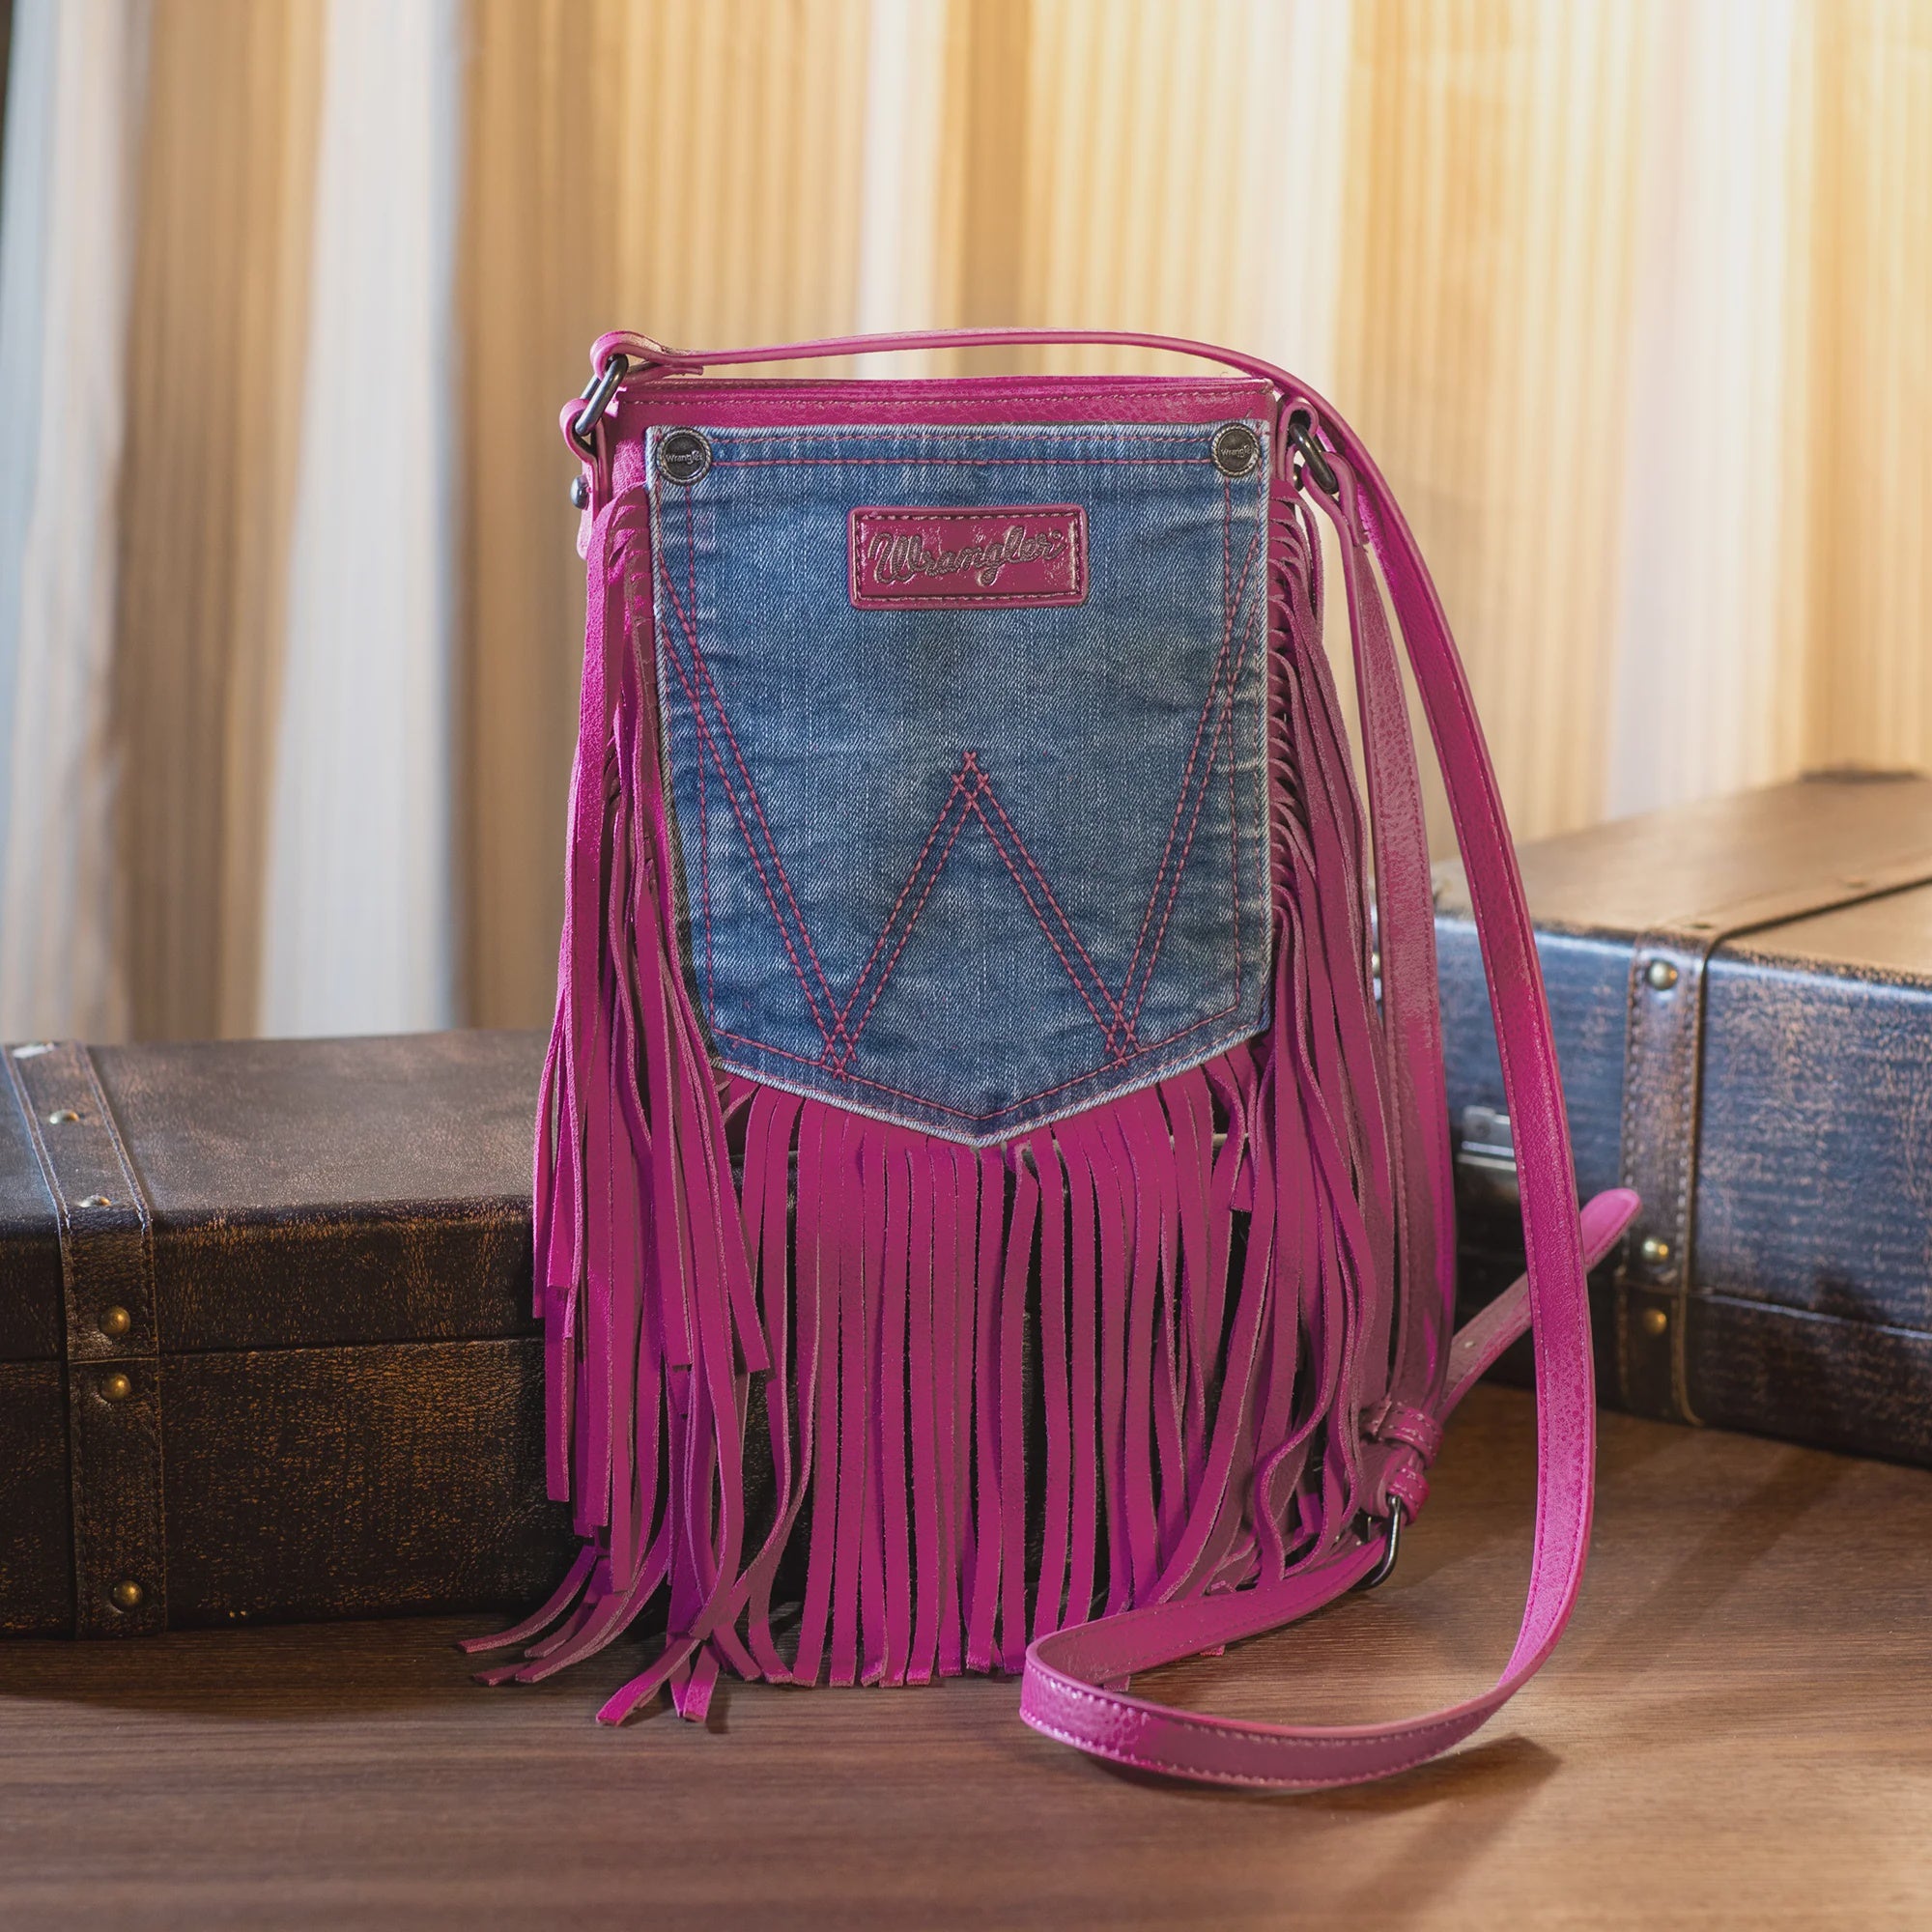 Wrangler Leather Fringe Denim Pocket Crossbody Bag - Hot Pink (6969633669197)